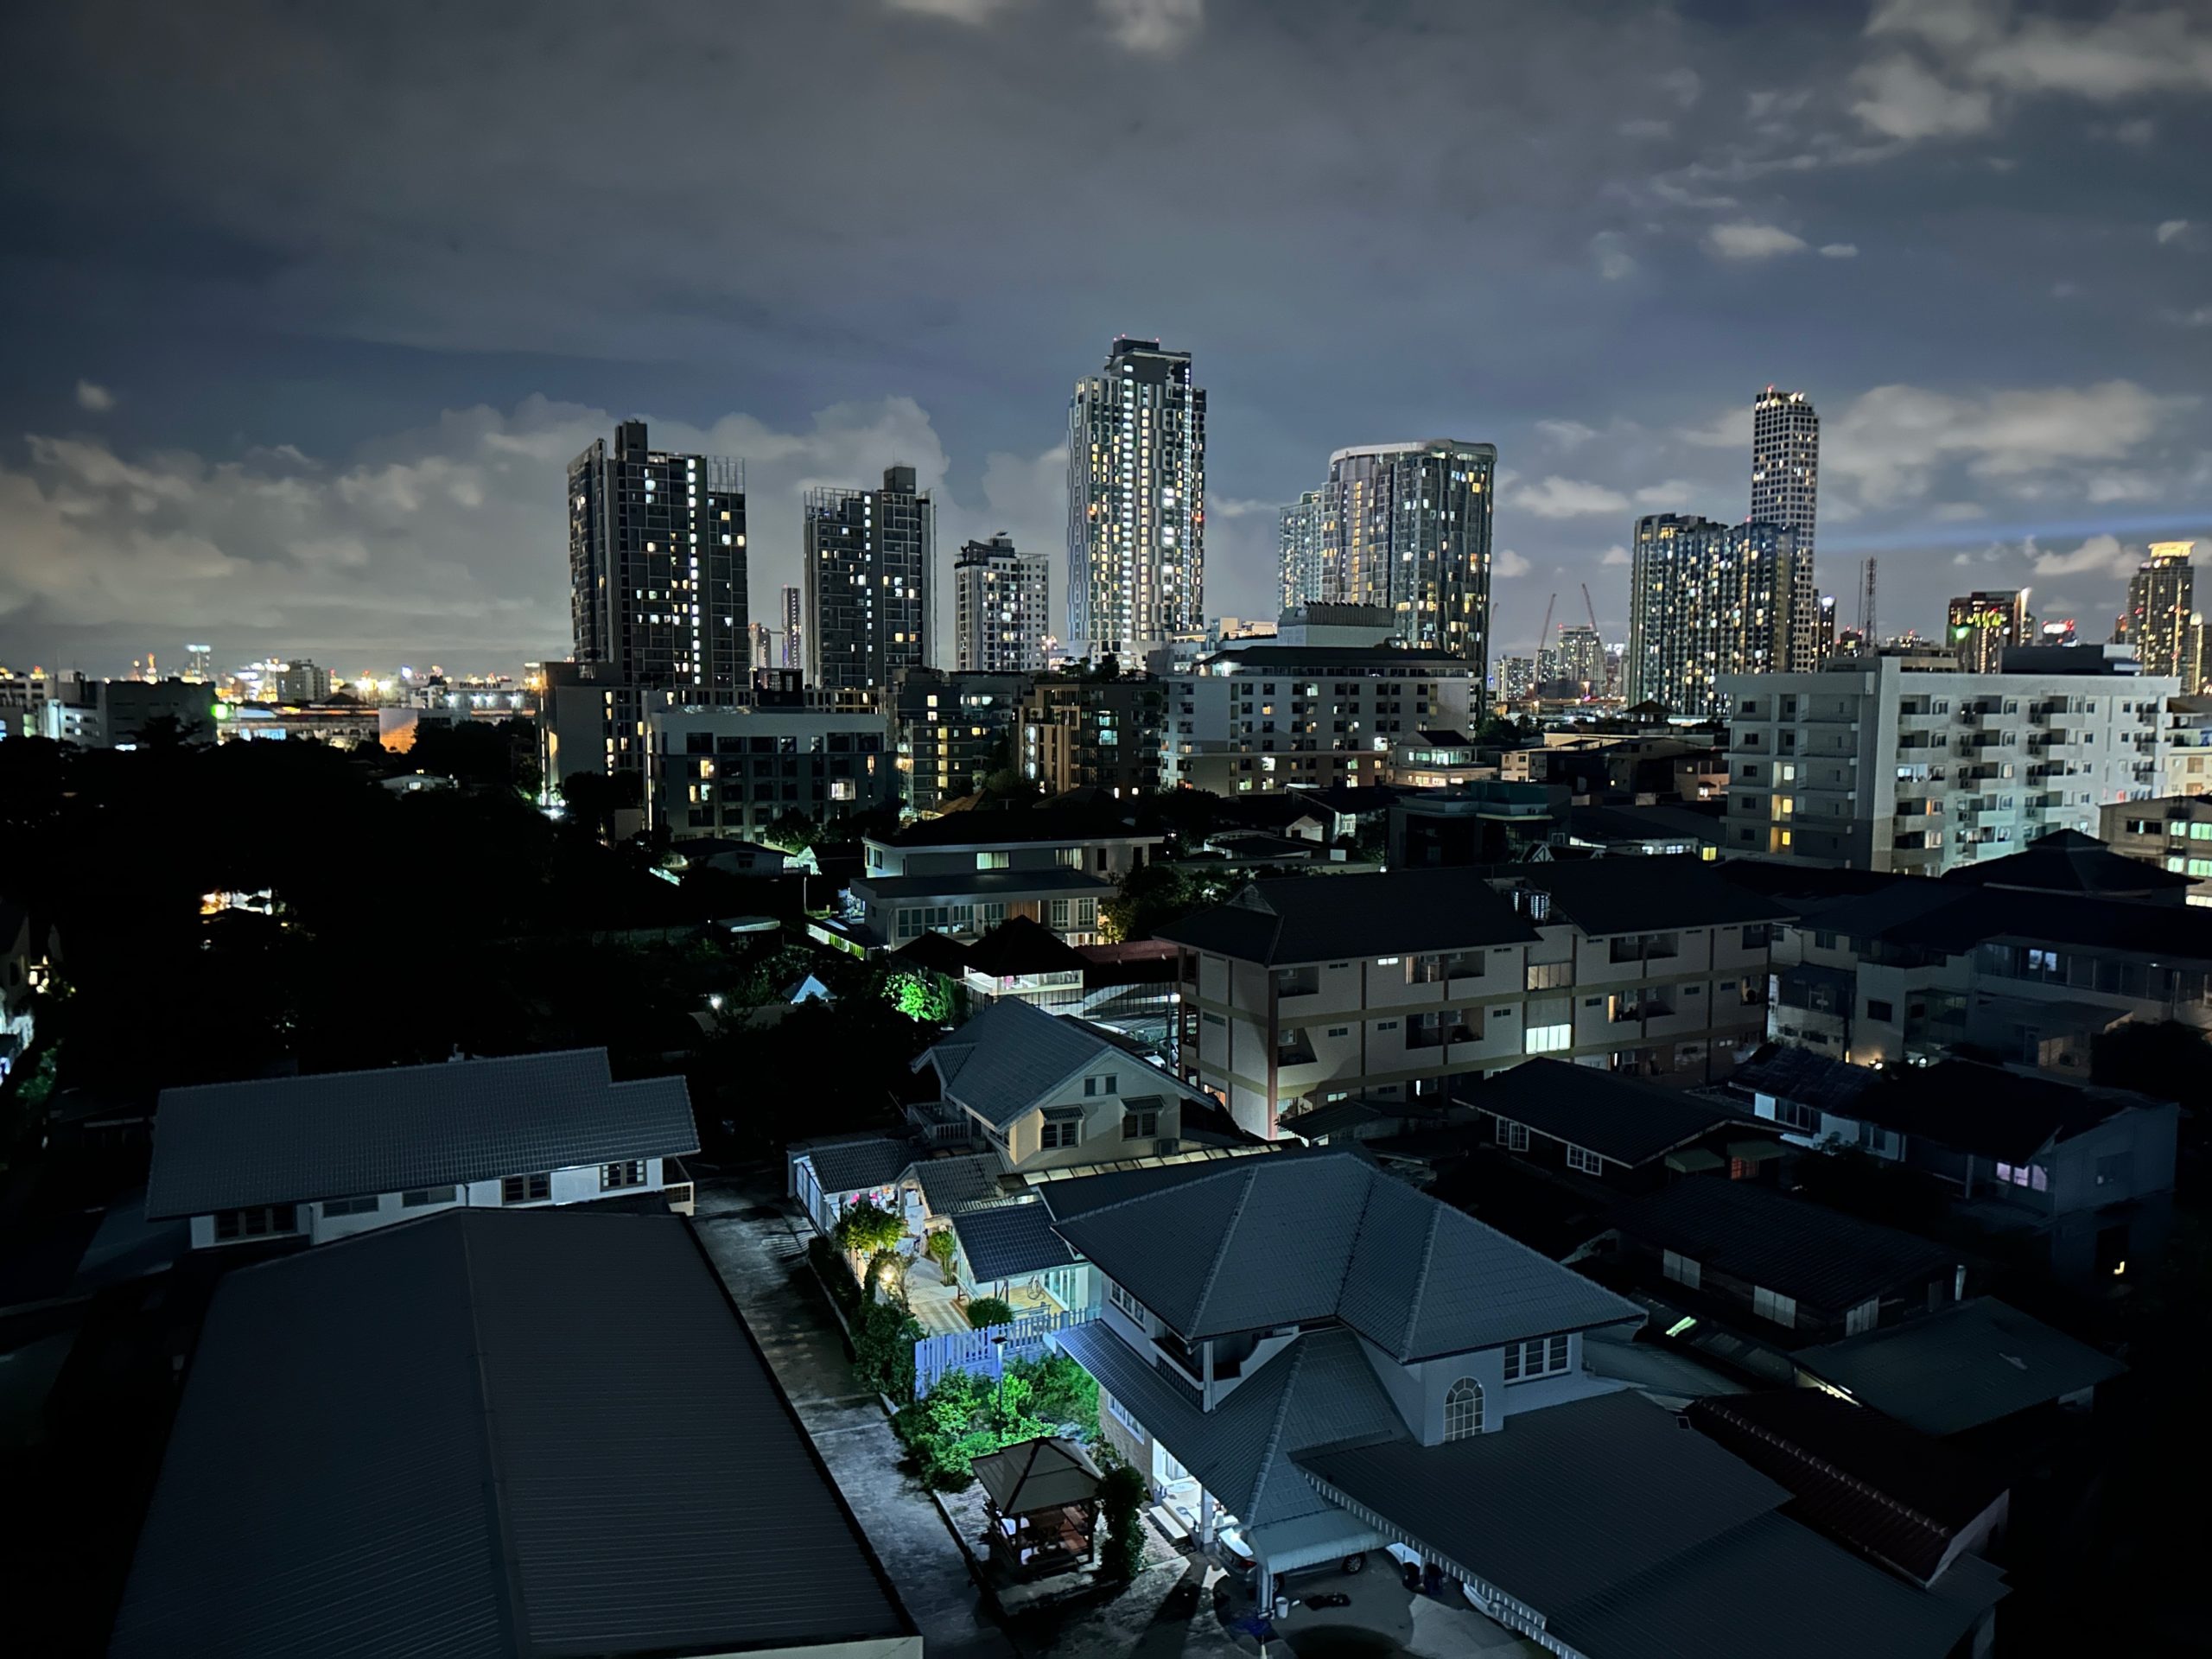 Vue de nuit sur le quartier On Nut à Bangkok avec des immeubles résidentiels éclairés.